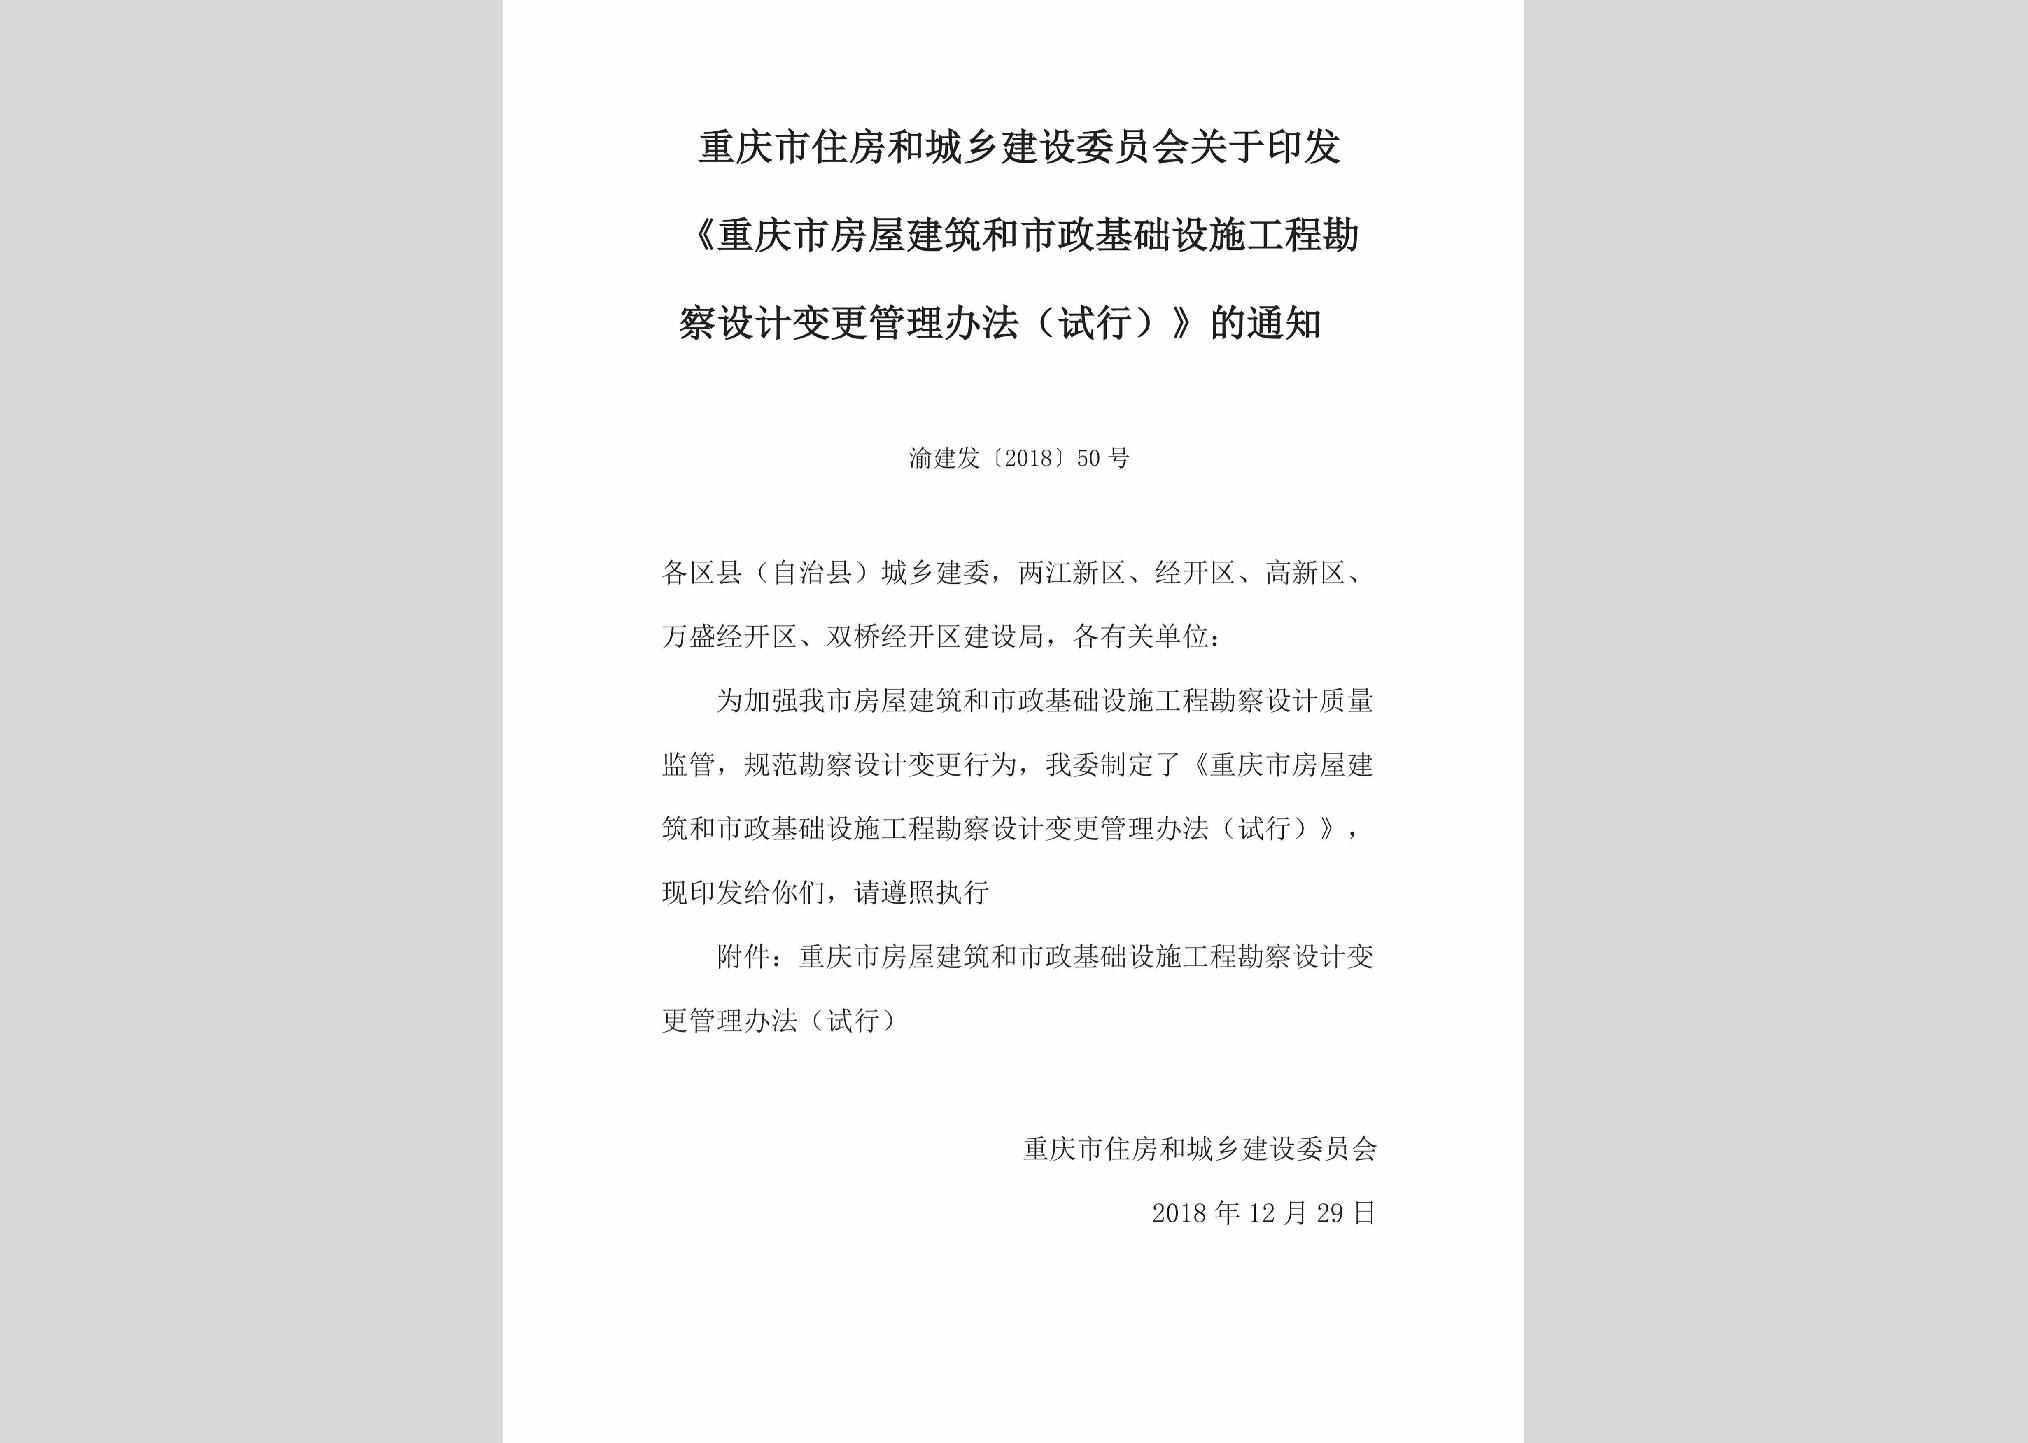 渝建发[2018]50号：关于印发《重庆市房屋建筑和市政基础设施工程勘察设计变更管理办法（试行）》的通知